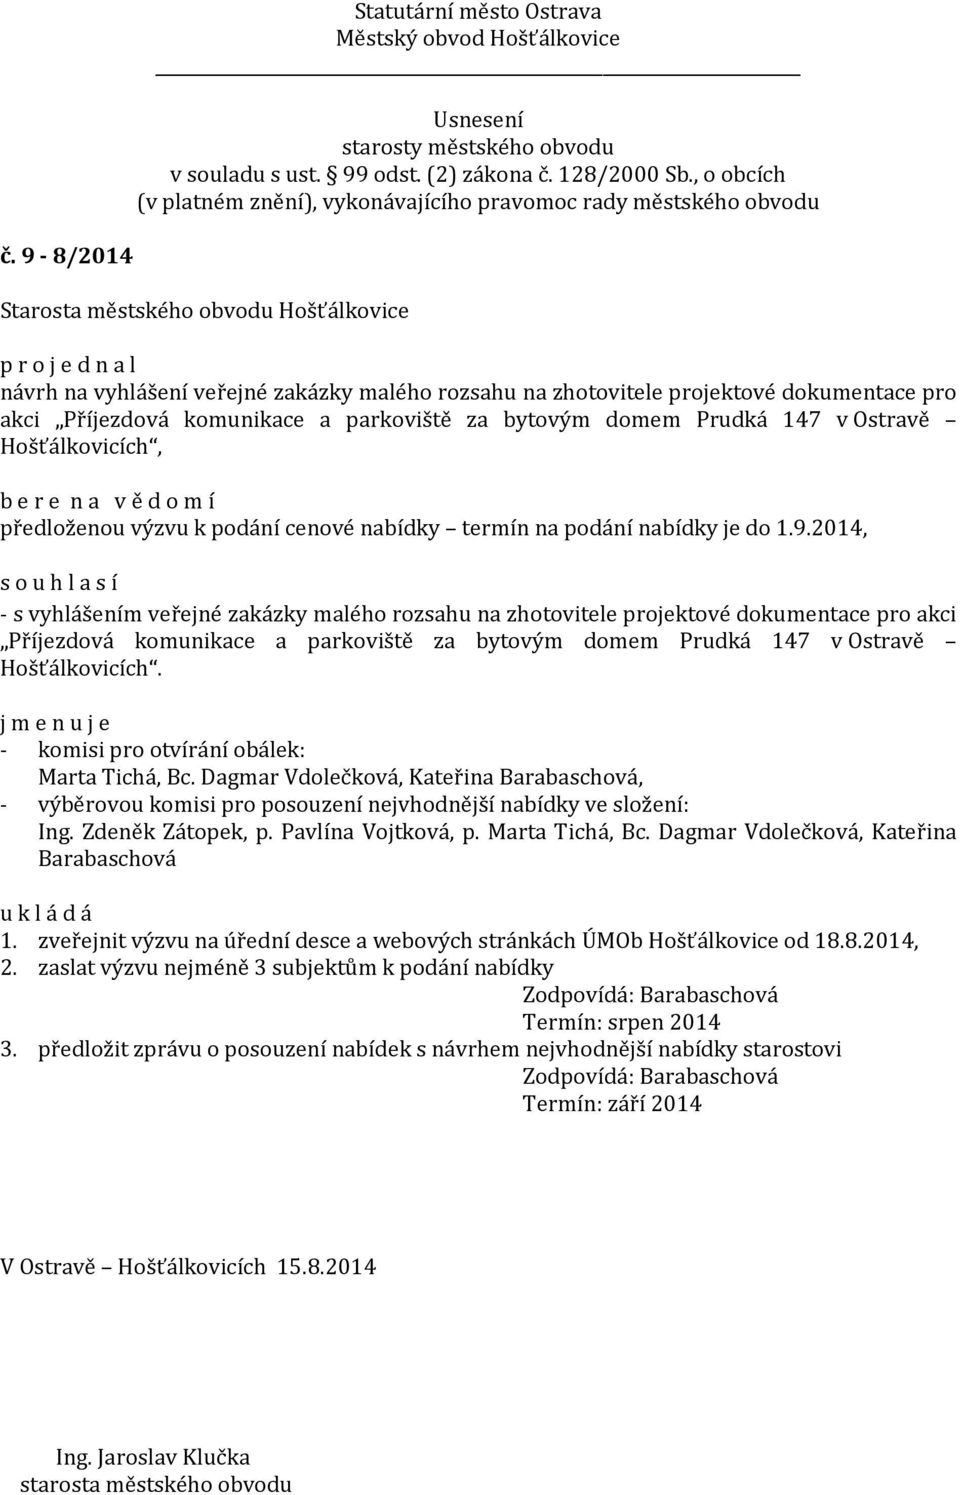 2014, - s vyhlášením veřejné zakázky malého rozsahu na zhotovitele projektové dokumentace pro akci Příjezdová komunikace a parkoviště za bytovým domem Prudká 147 v Ostravě Hošťálkovicích.